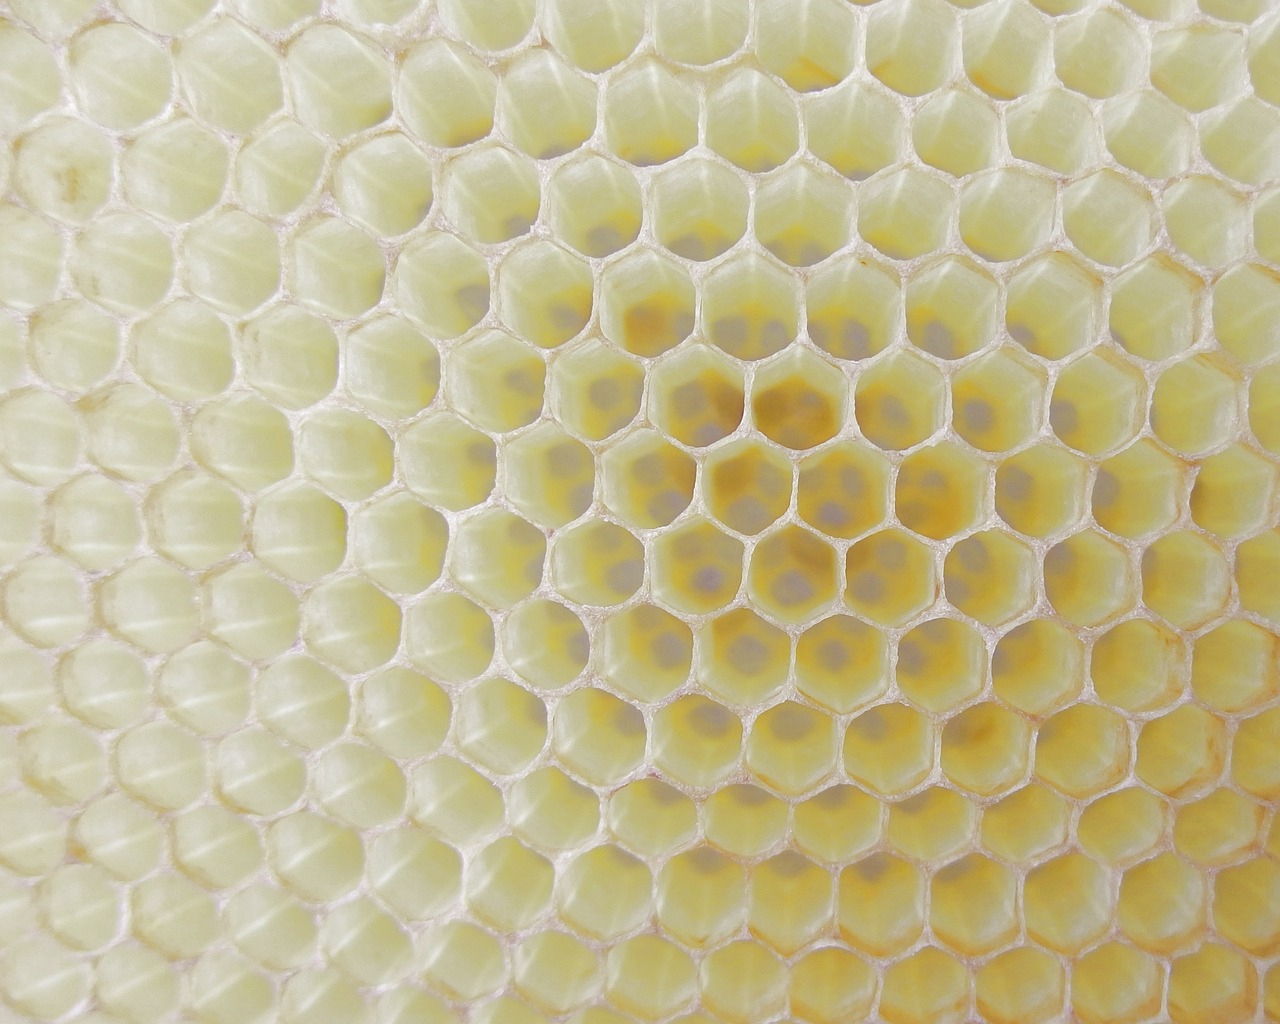 ¿Cómo se llama también panal de abejas?